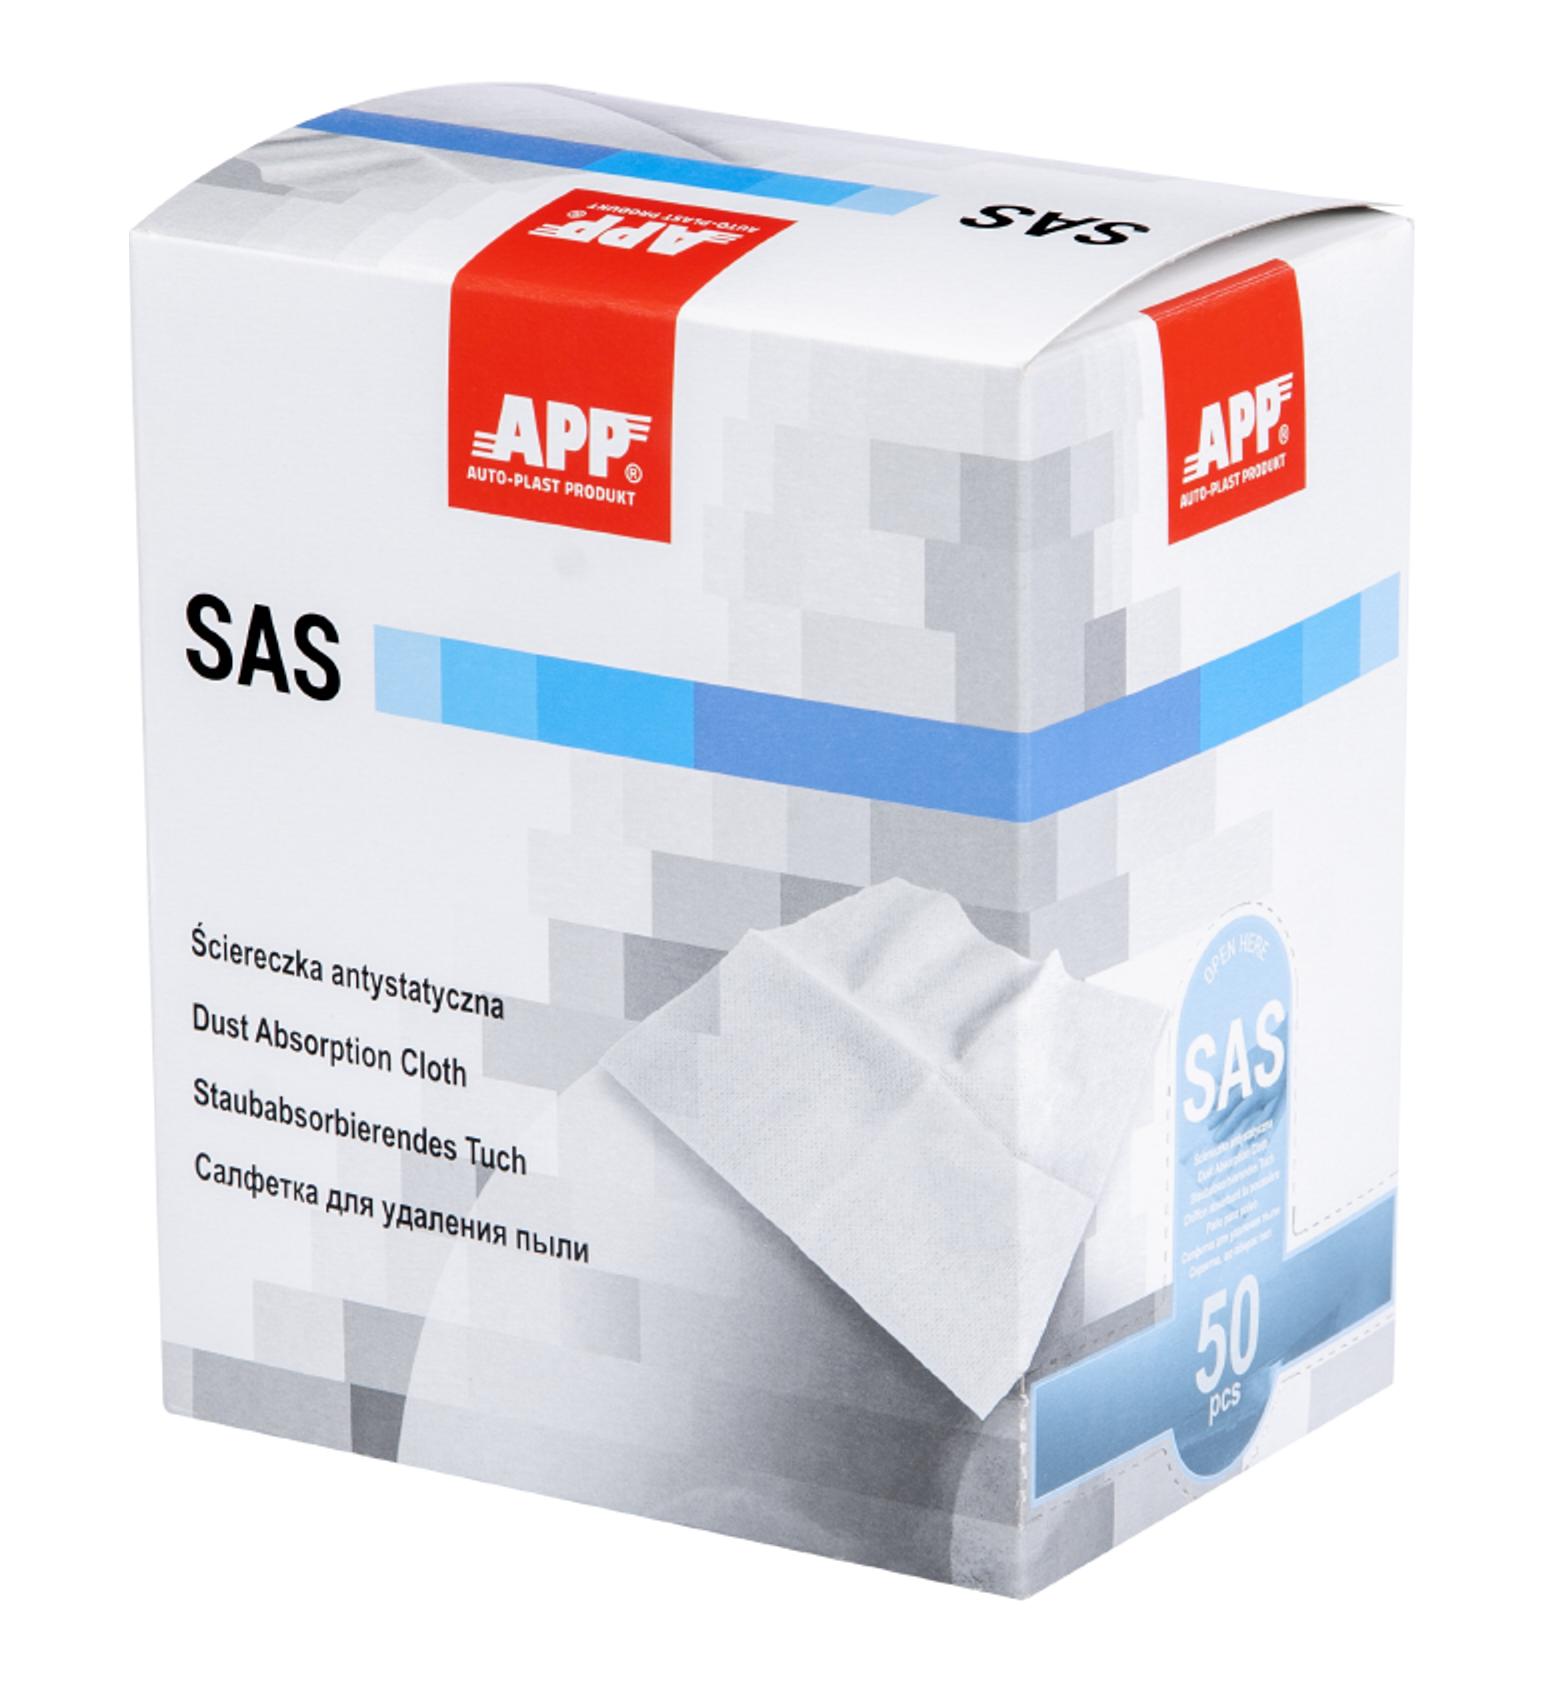 APP 250501 SAS - Staubbindetuch Antistatiktuch 900mm x 450mm 50 Stk. | Honigtuch Staubtuch Autolack reinigen Lack